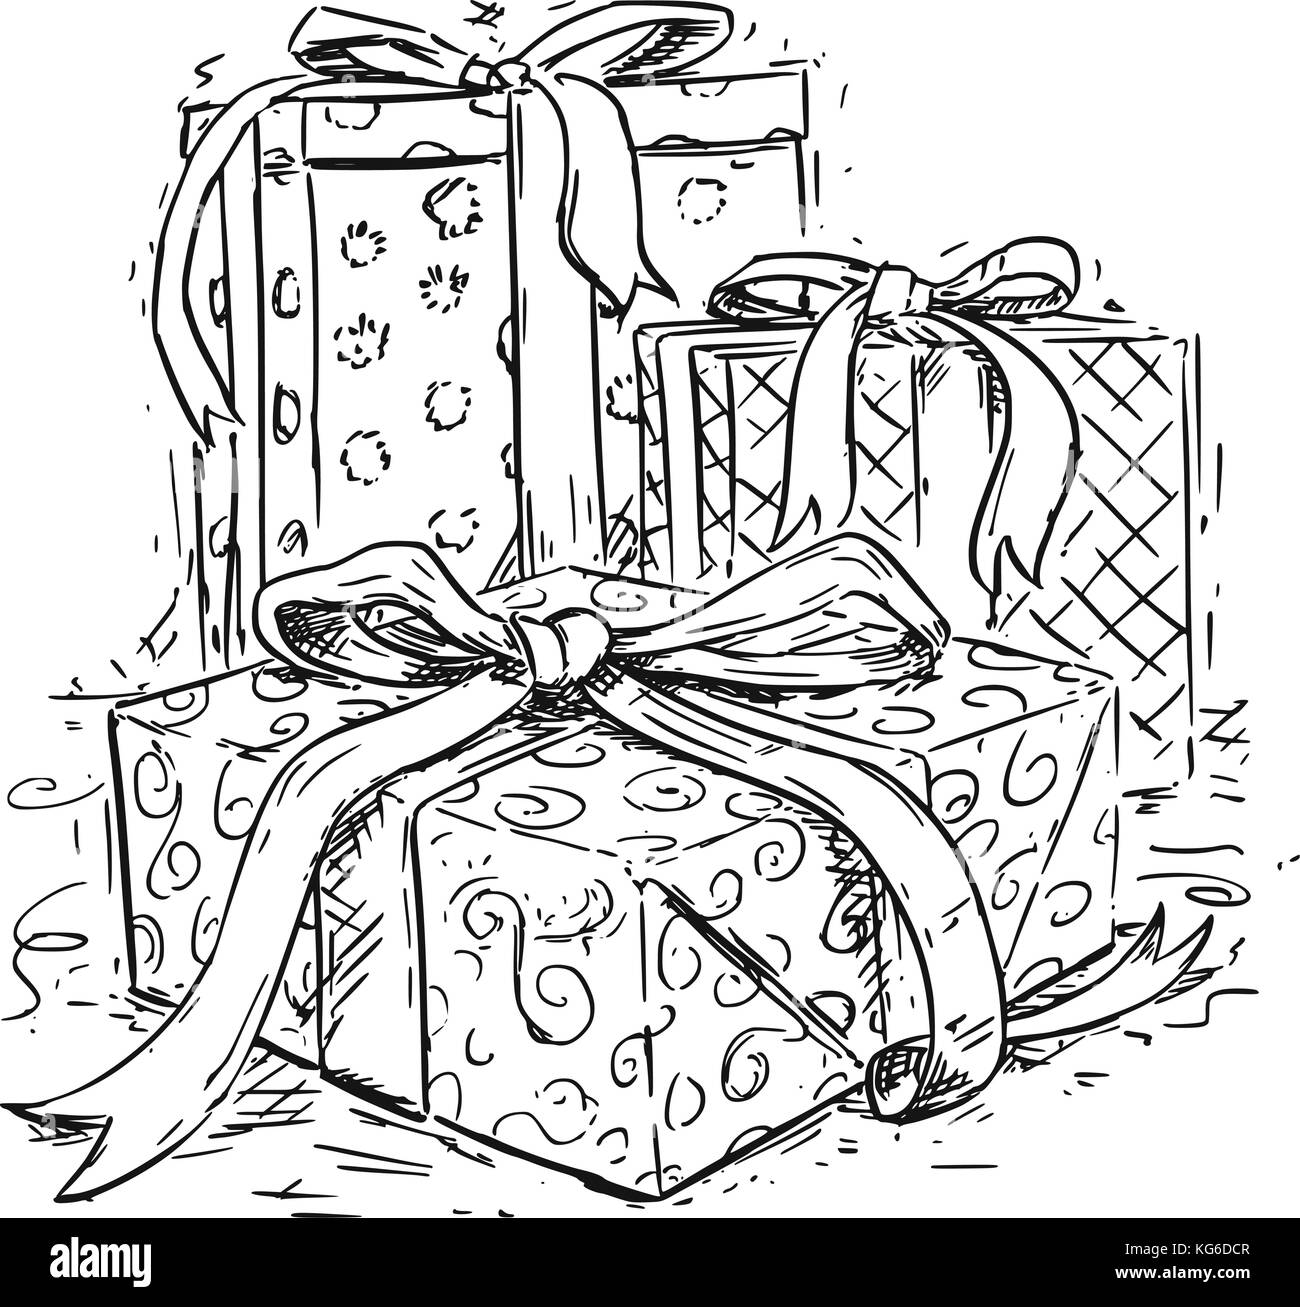 Disegni Di Regali Di Natale.Il Disegno Vettoriale Illustrazione Di Tre Regali Di Natale Di Scatole Con Nastro Decorativo E Wrap Immagine E Vettoriale Alamy